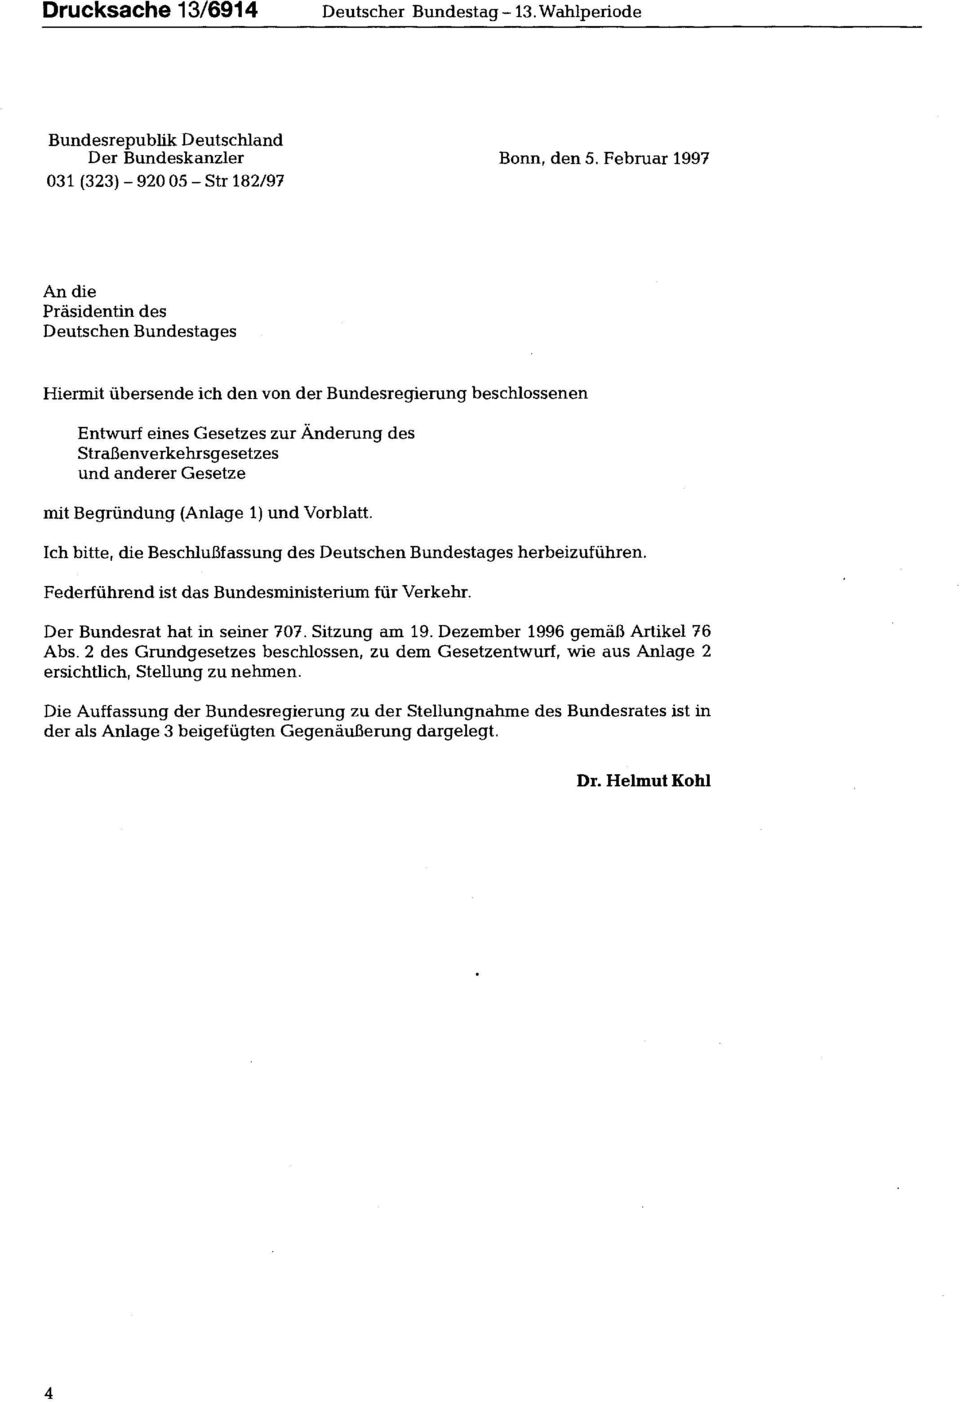 Straßenverkehrsgesetzes und anderer Gesetze mit (Anlage 1) und Vorblatt. Ich bitte, die Beschlußfassung des Deutschen Bundestages herbeizuführen. Federführend ist das Bundesministerium für Verkehr.